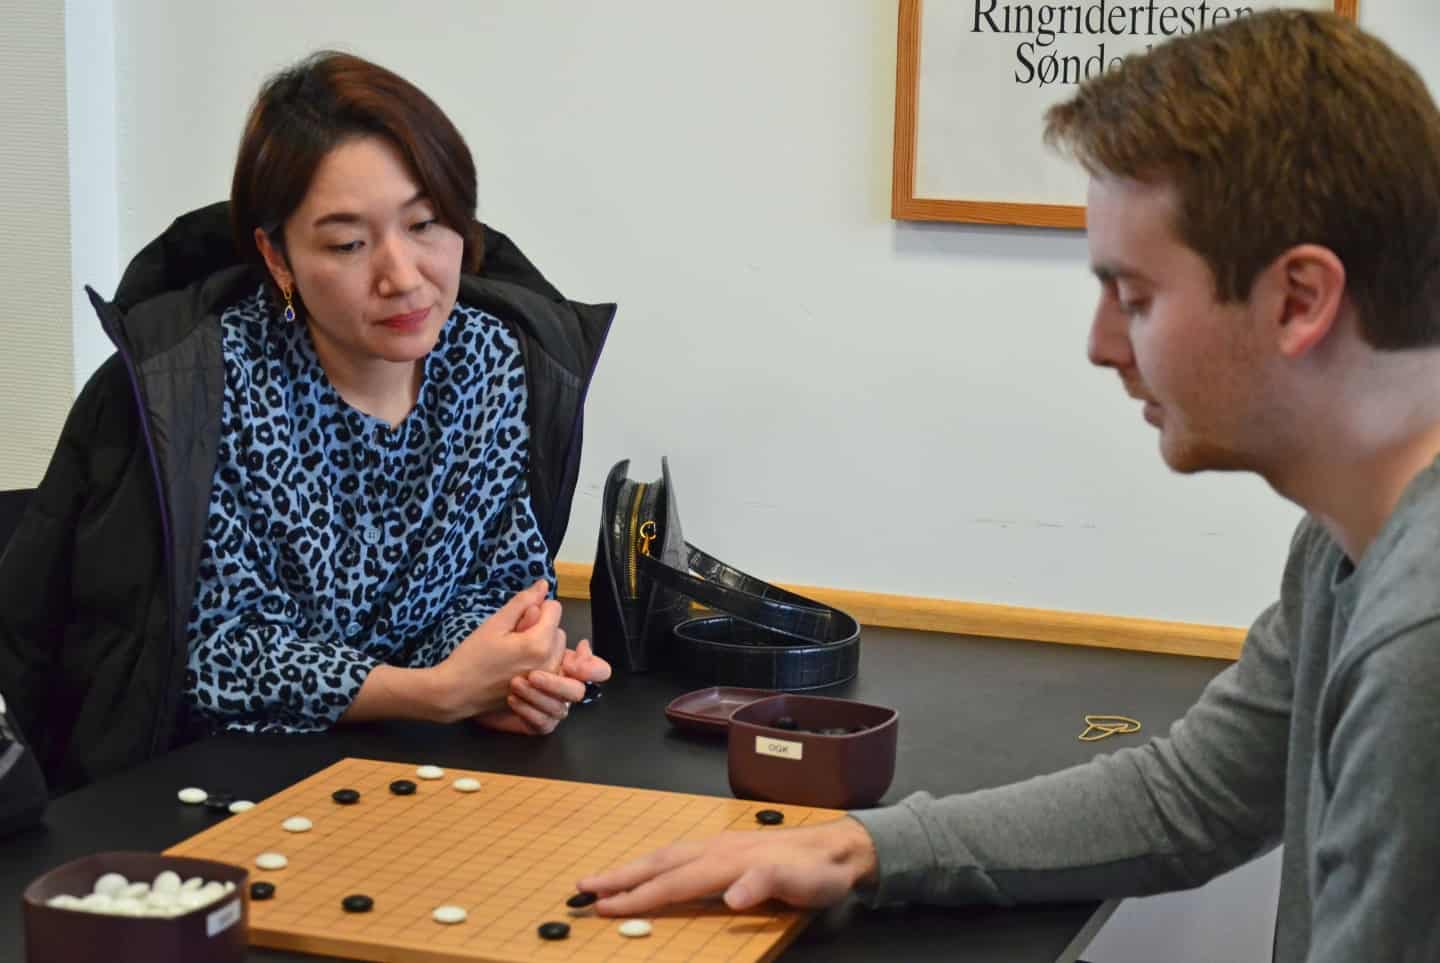 Kjeld er vild flere tusind år gammelt kinesisk brætspil: Påsken bruges på nordisk mesterskab i Sønderborg | jv.dk